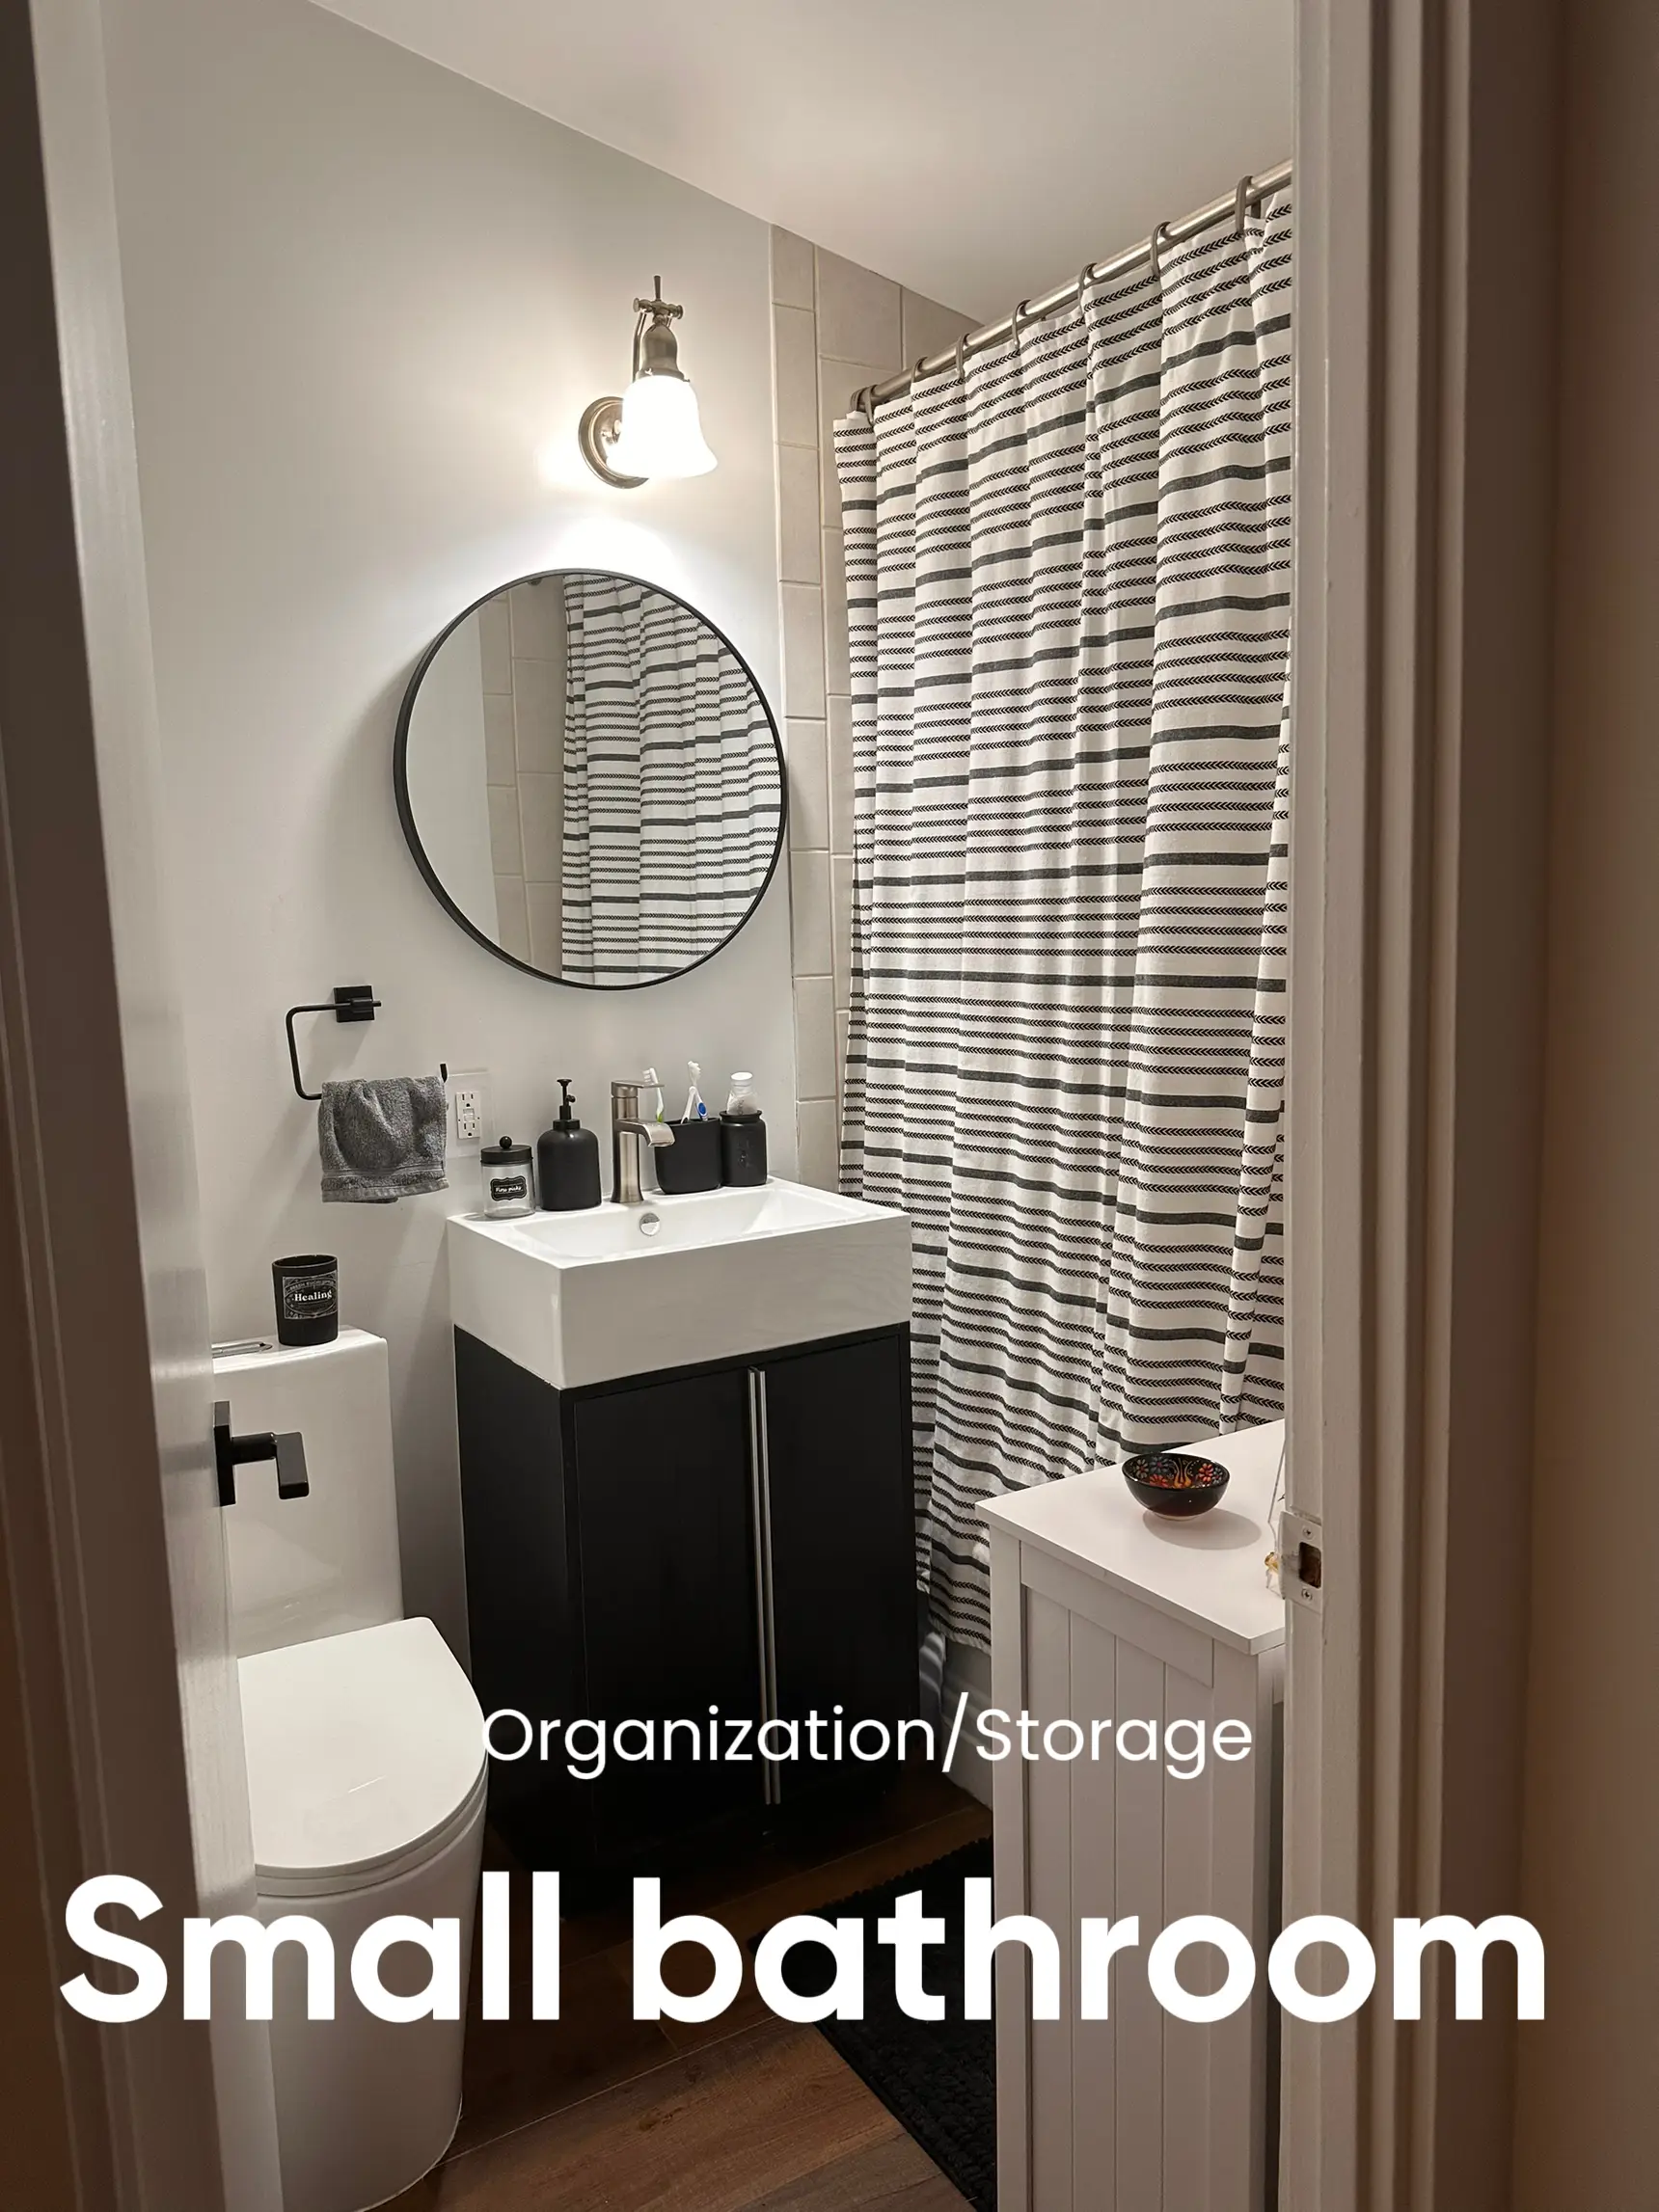 Small bathroom organizing & storage